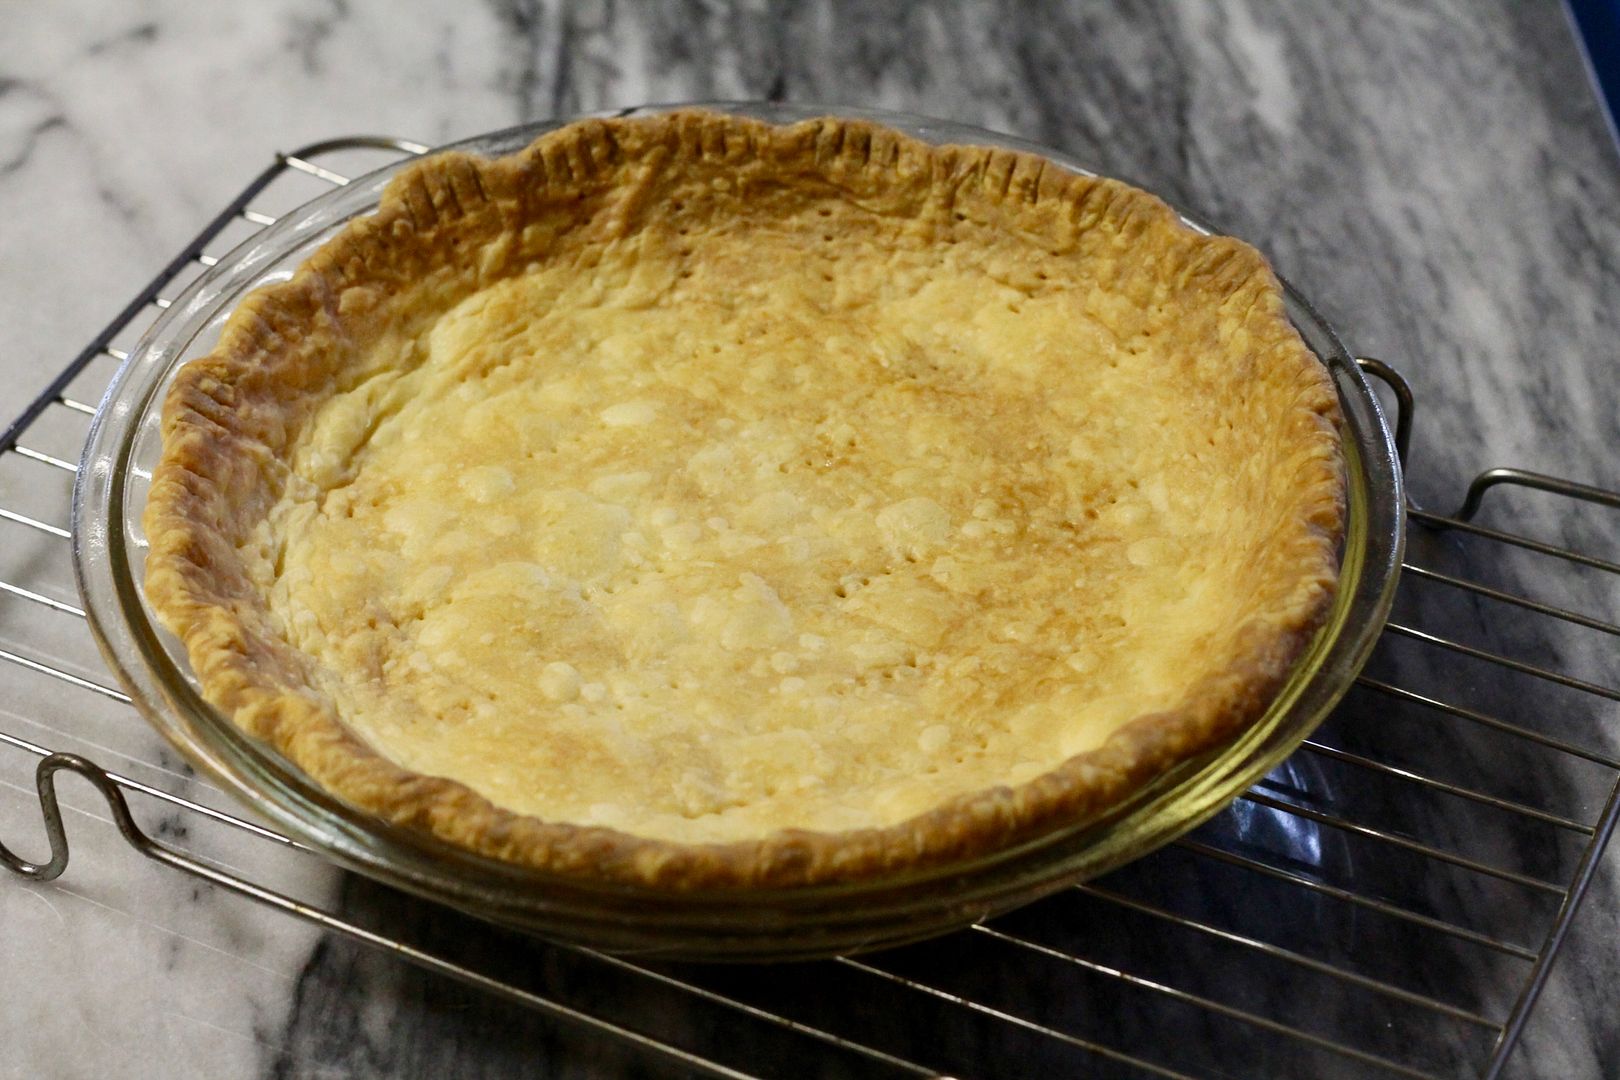 blind baked pie crust